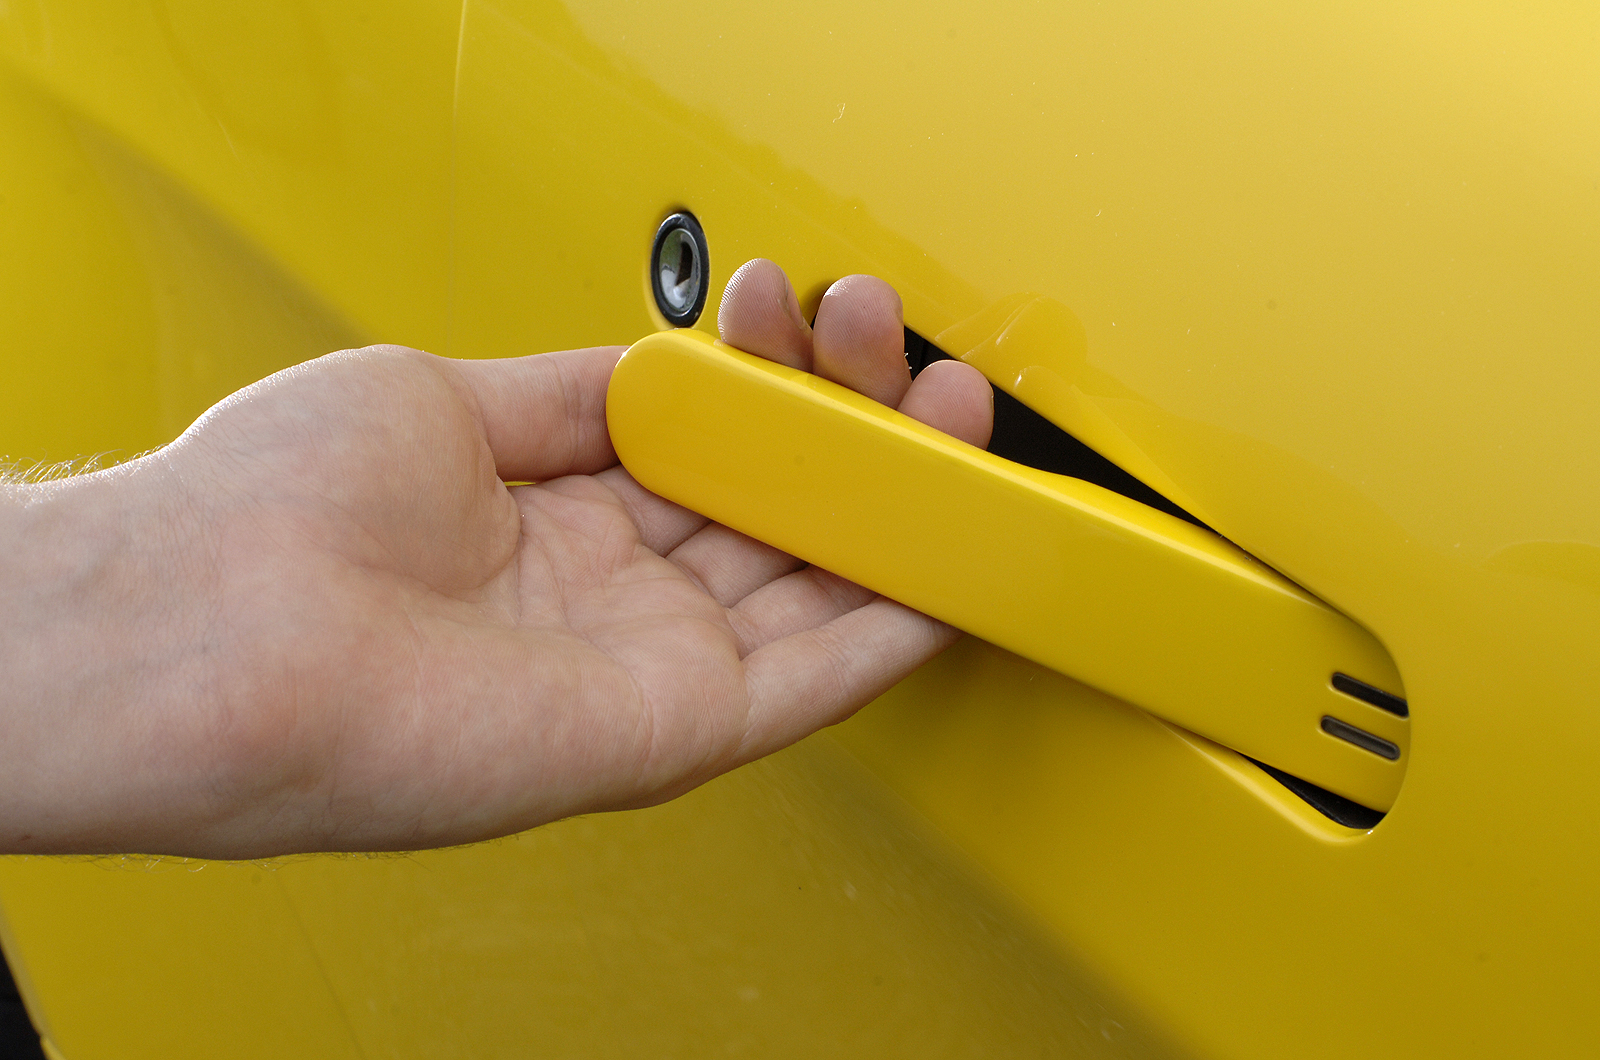 V8 Vantage Roadster's door handle